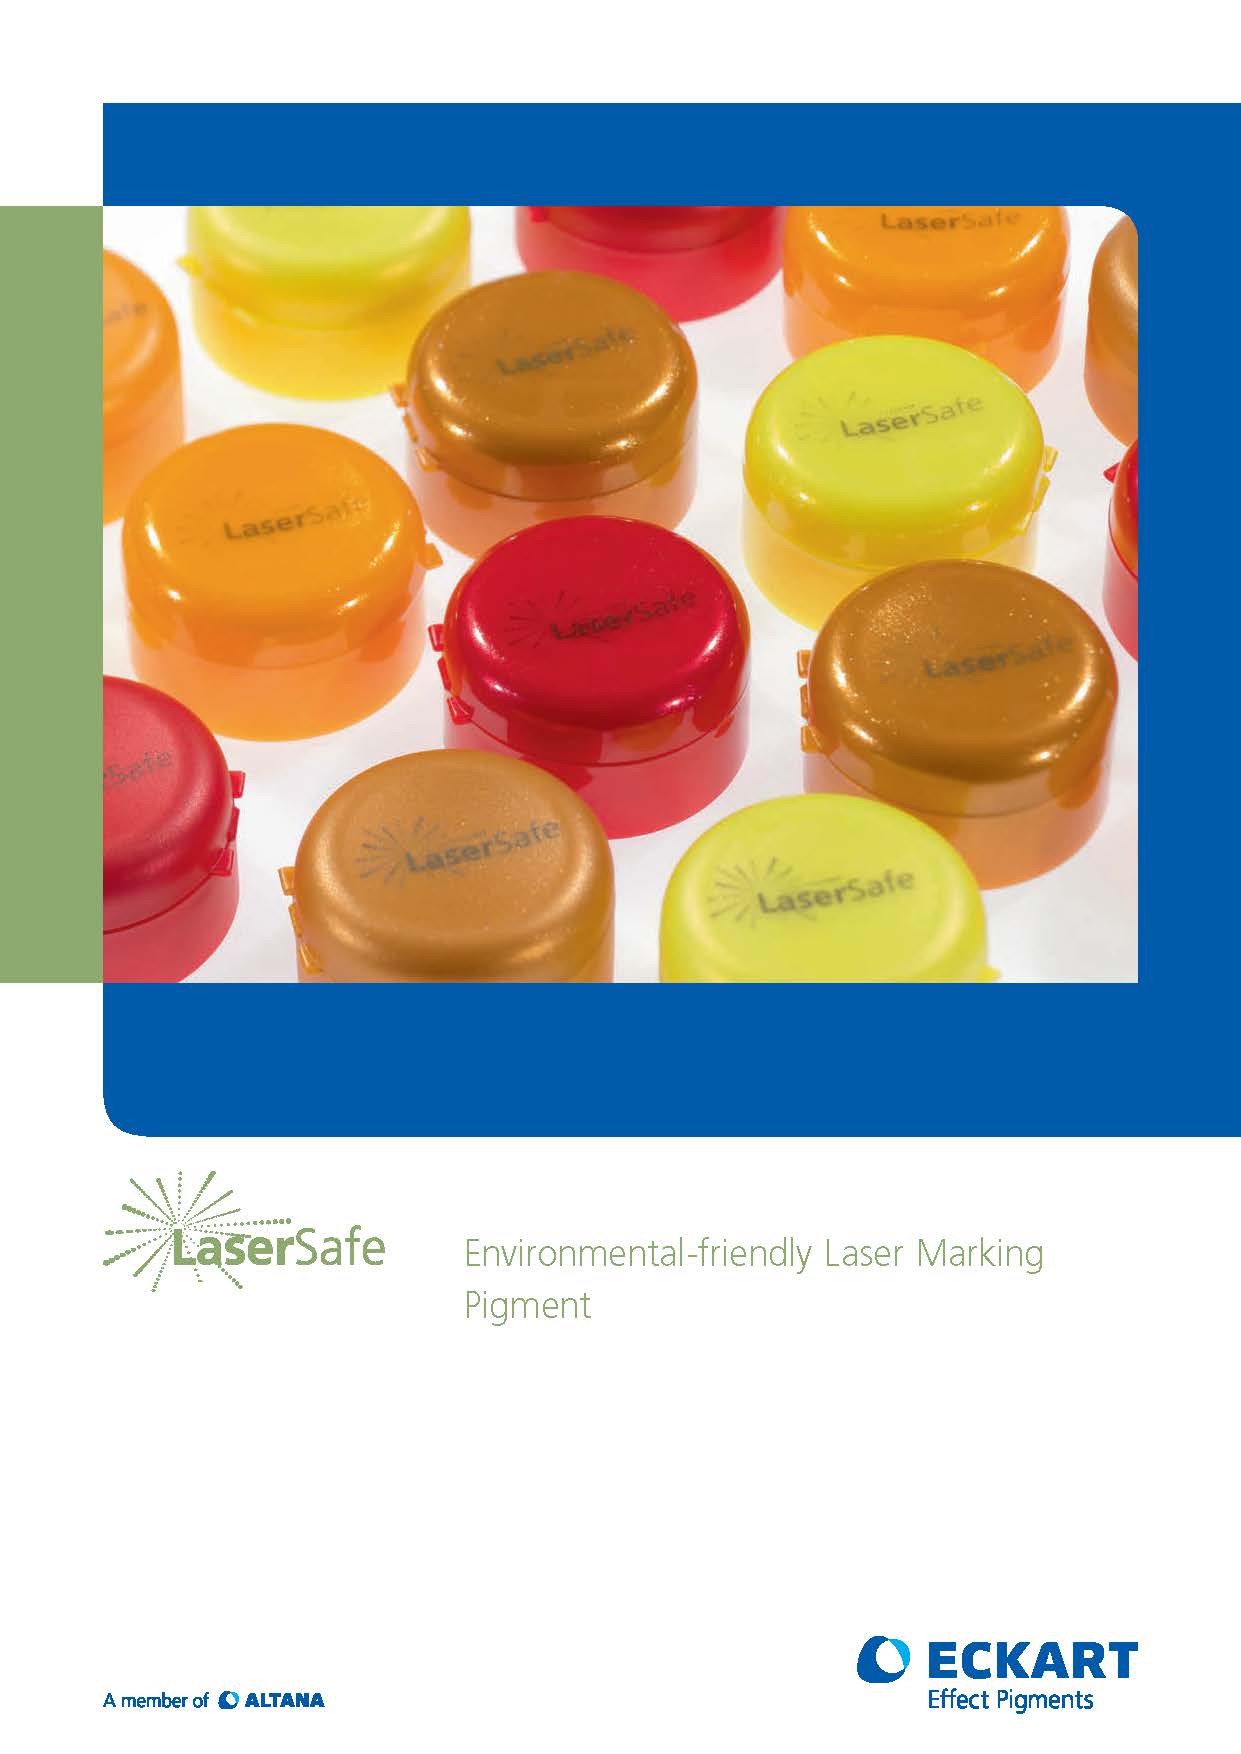 Lasersafe: A Laser Marking Pigment Brochure Image